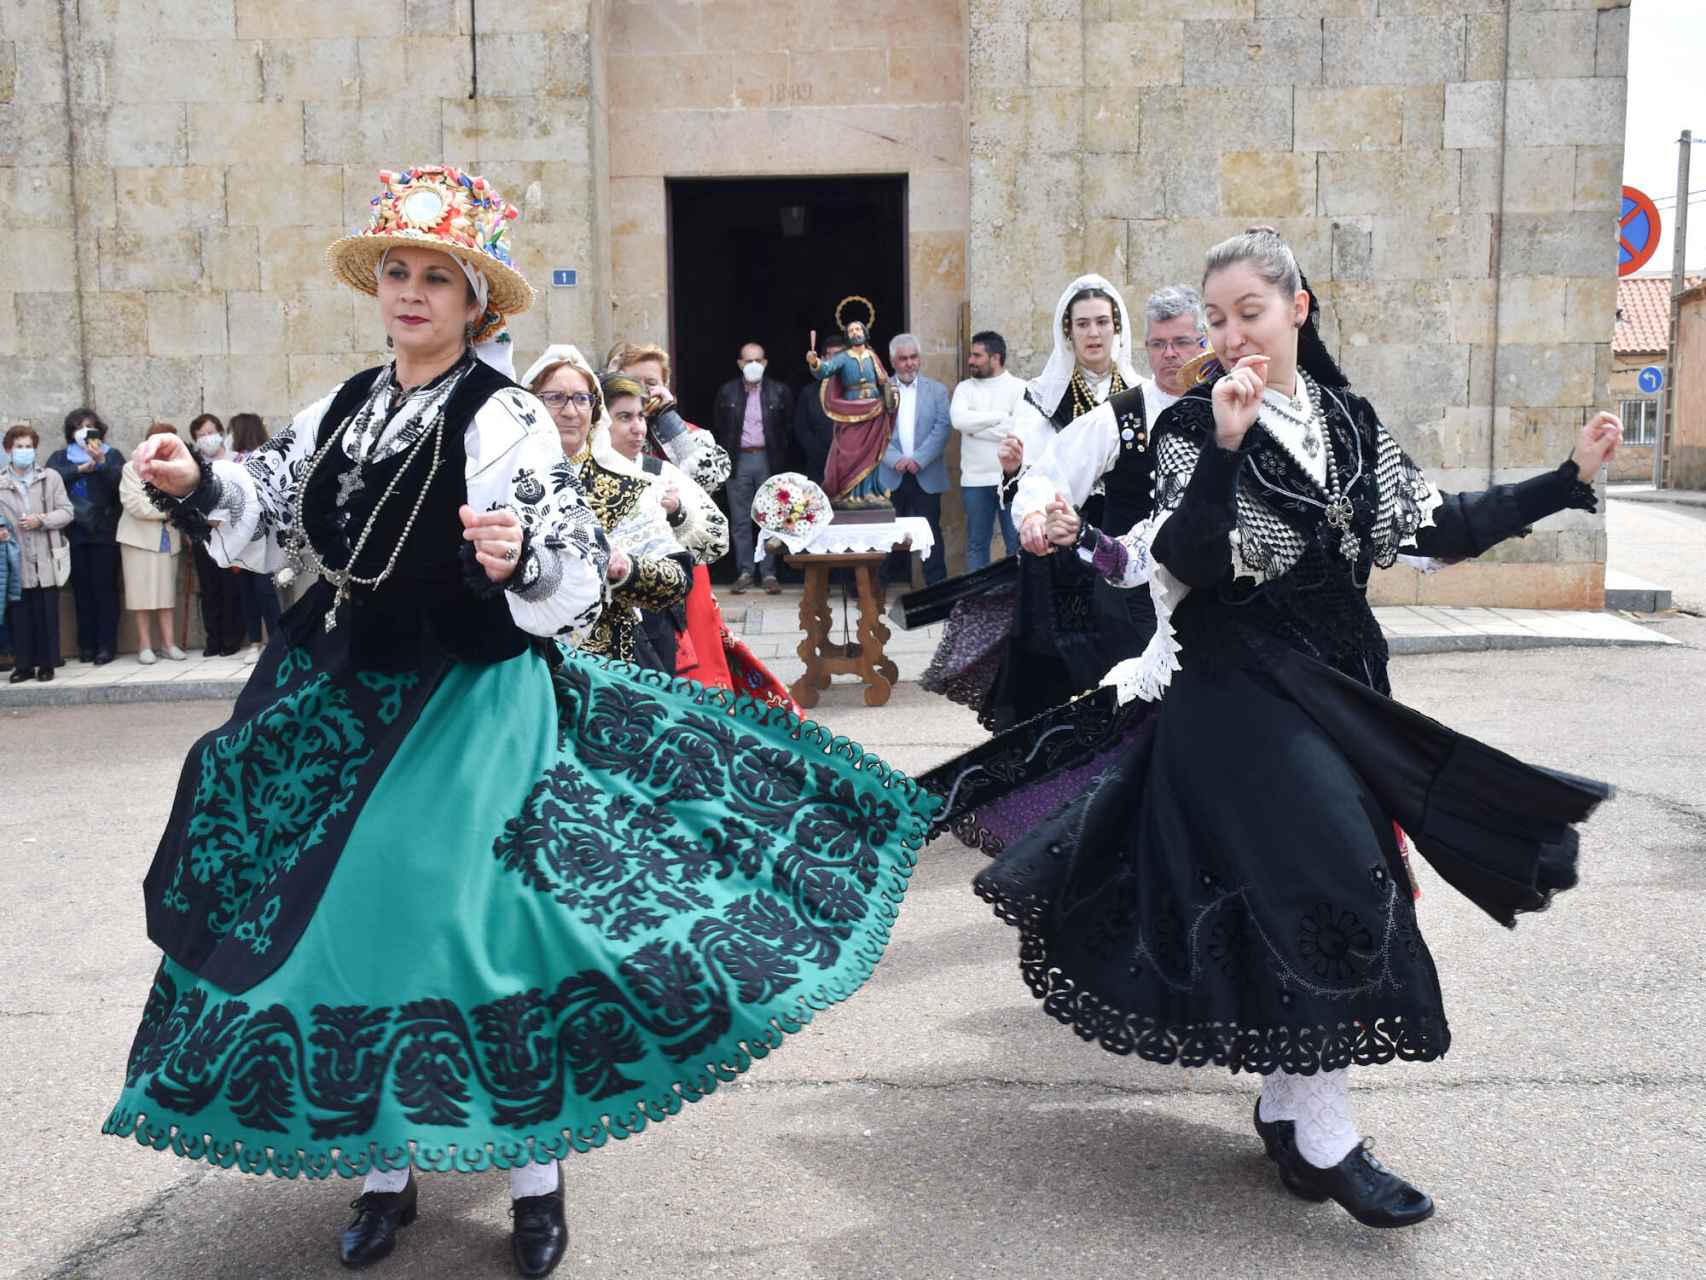 Doñinos de Salamanca honra a San Marcos con bailes tradicionales